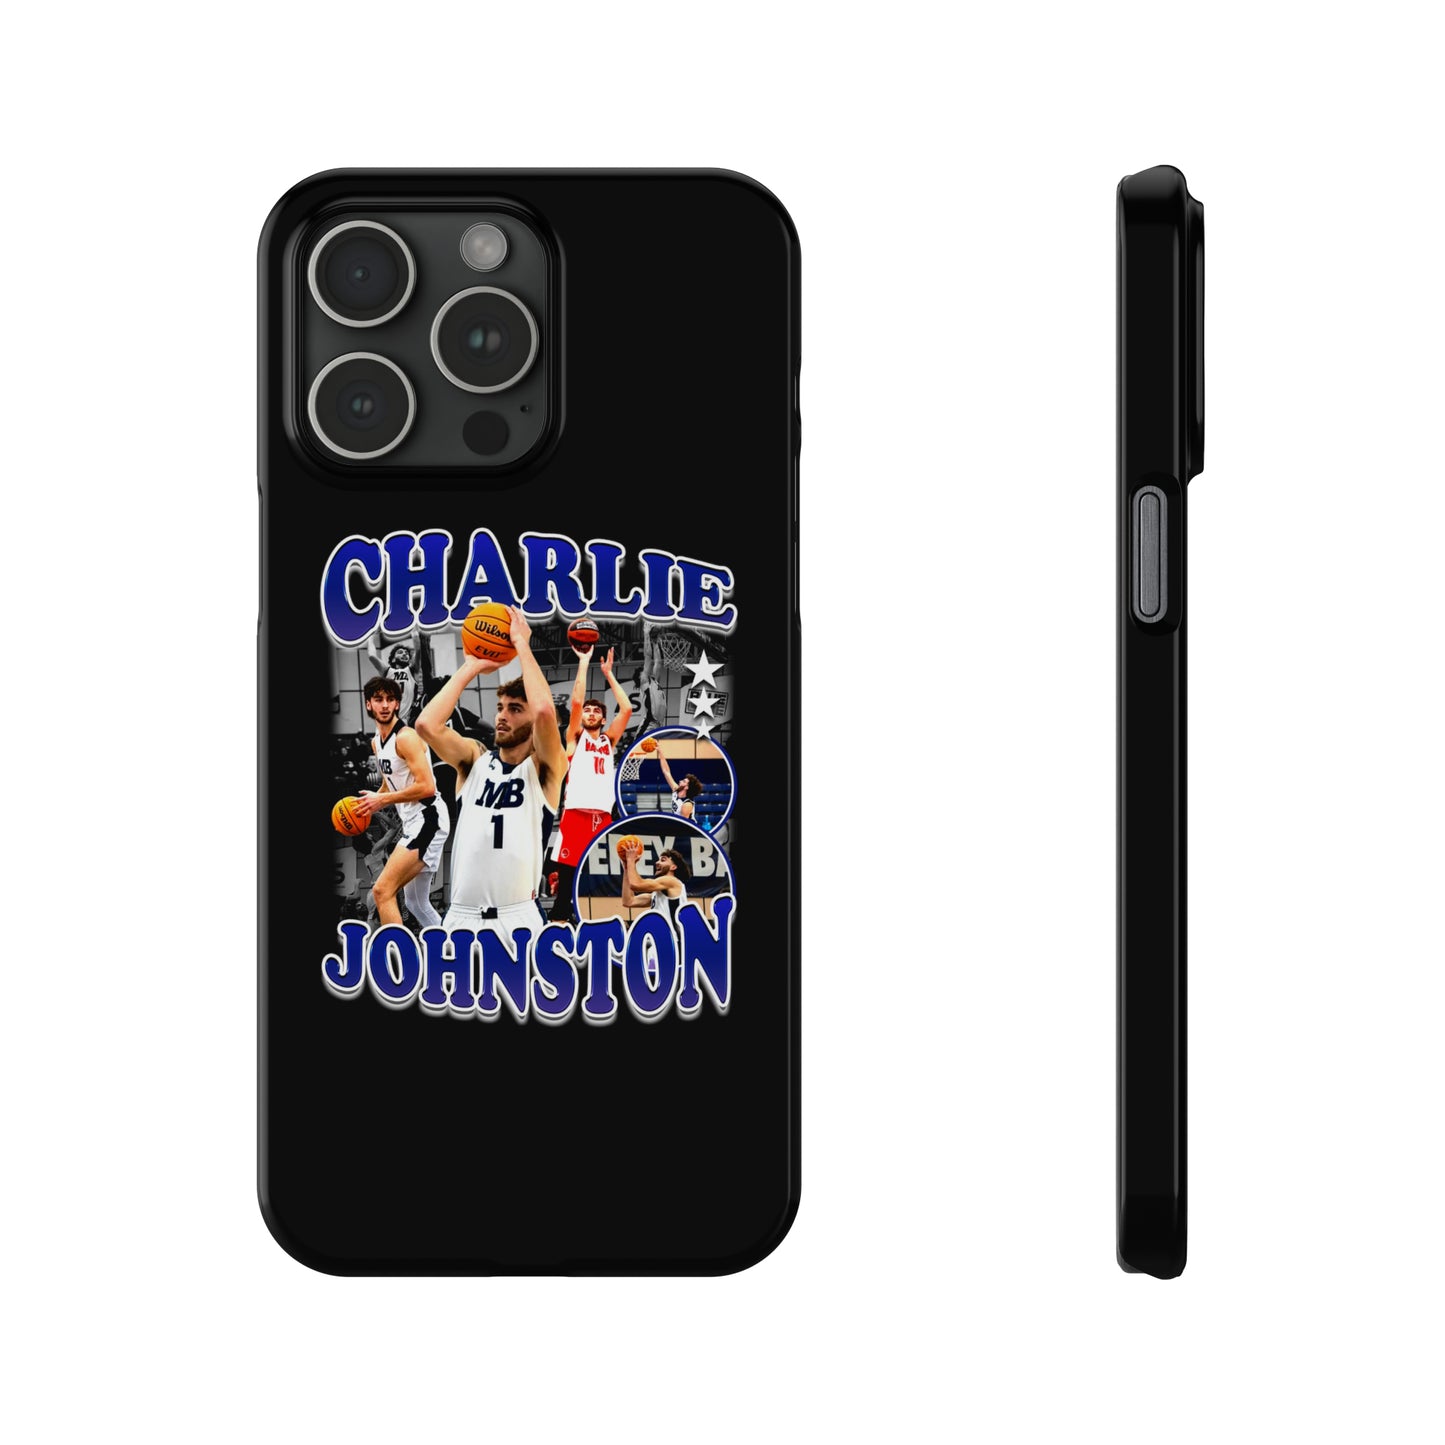 Charlie Johnston Slim Phone Cases